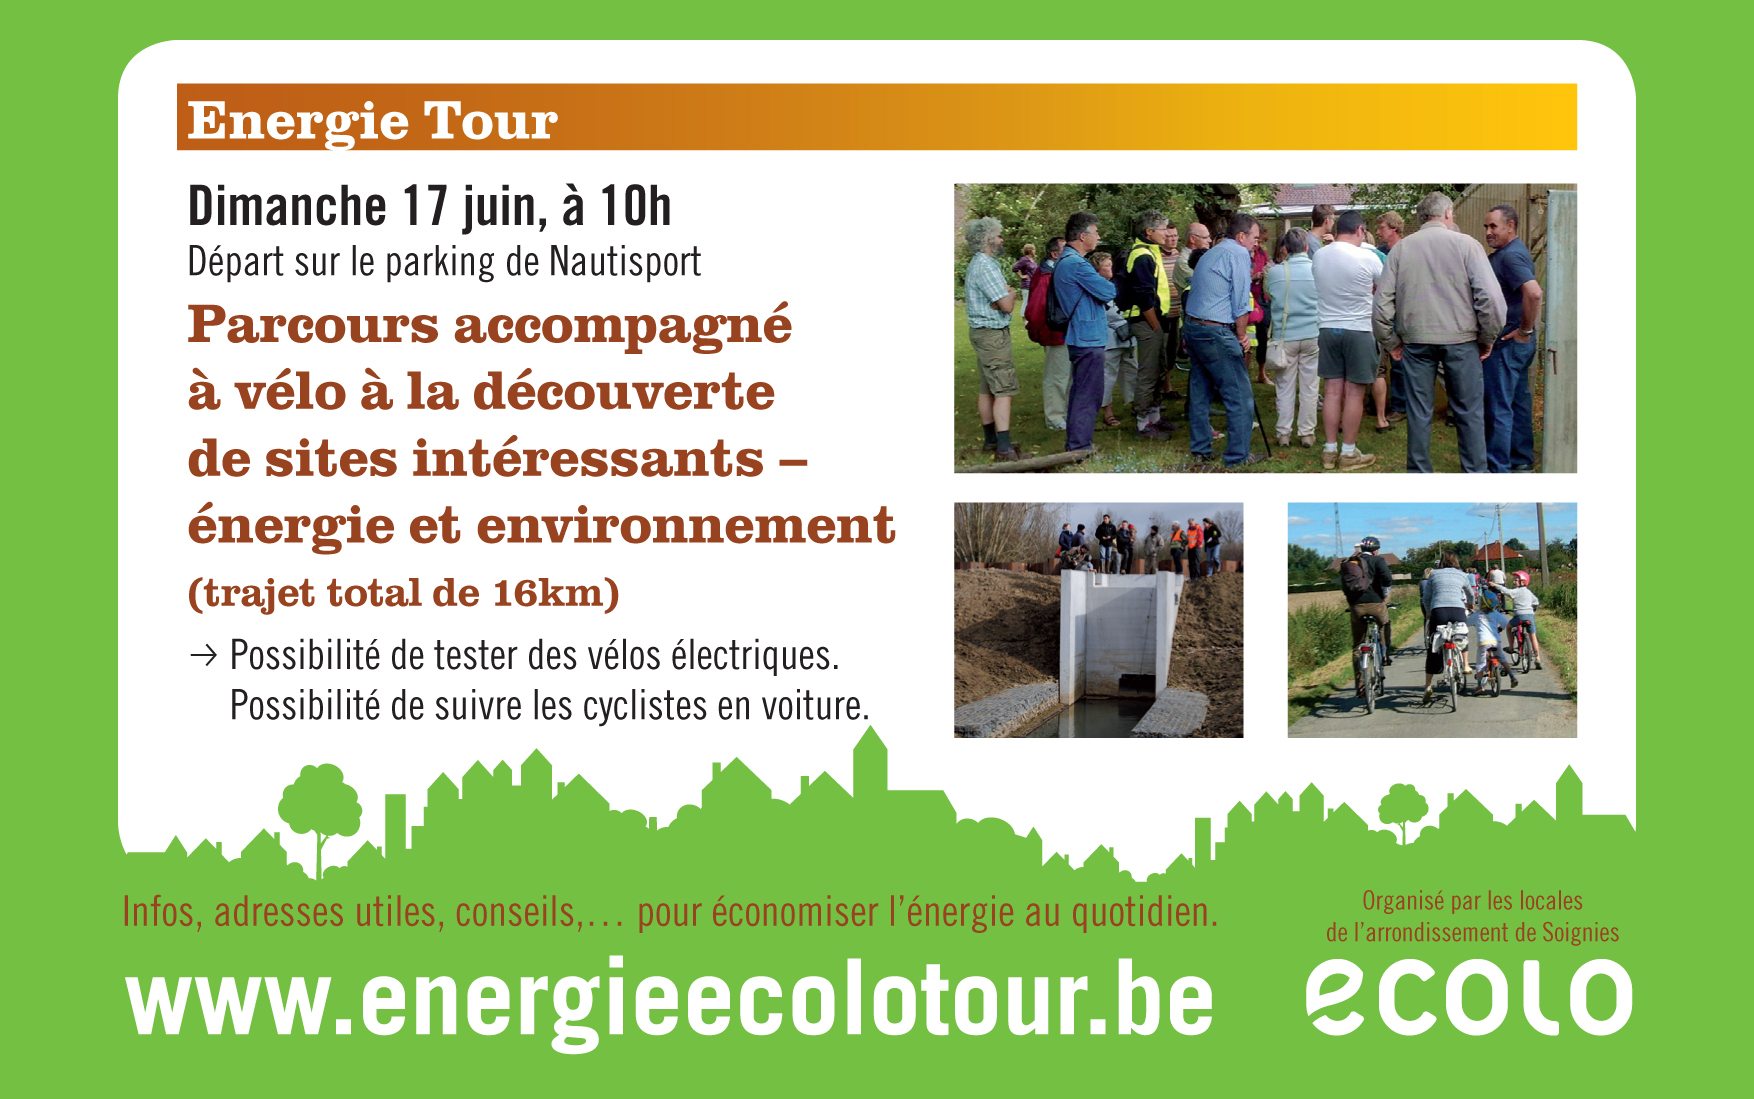 Energie Ecolo Tour 2012 16-17/6